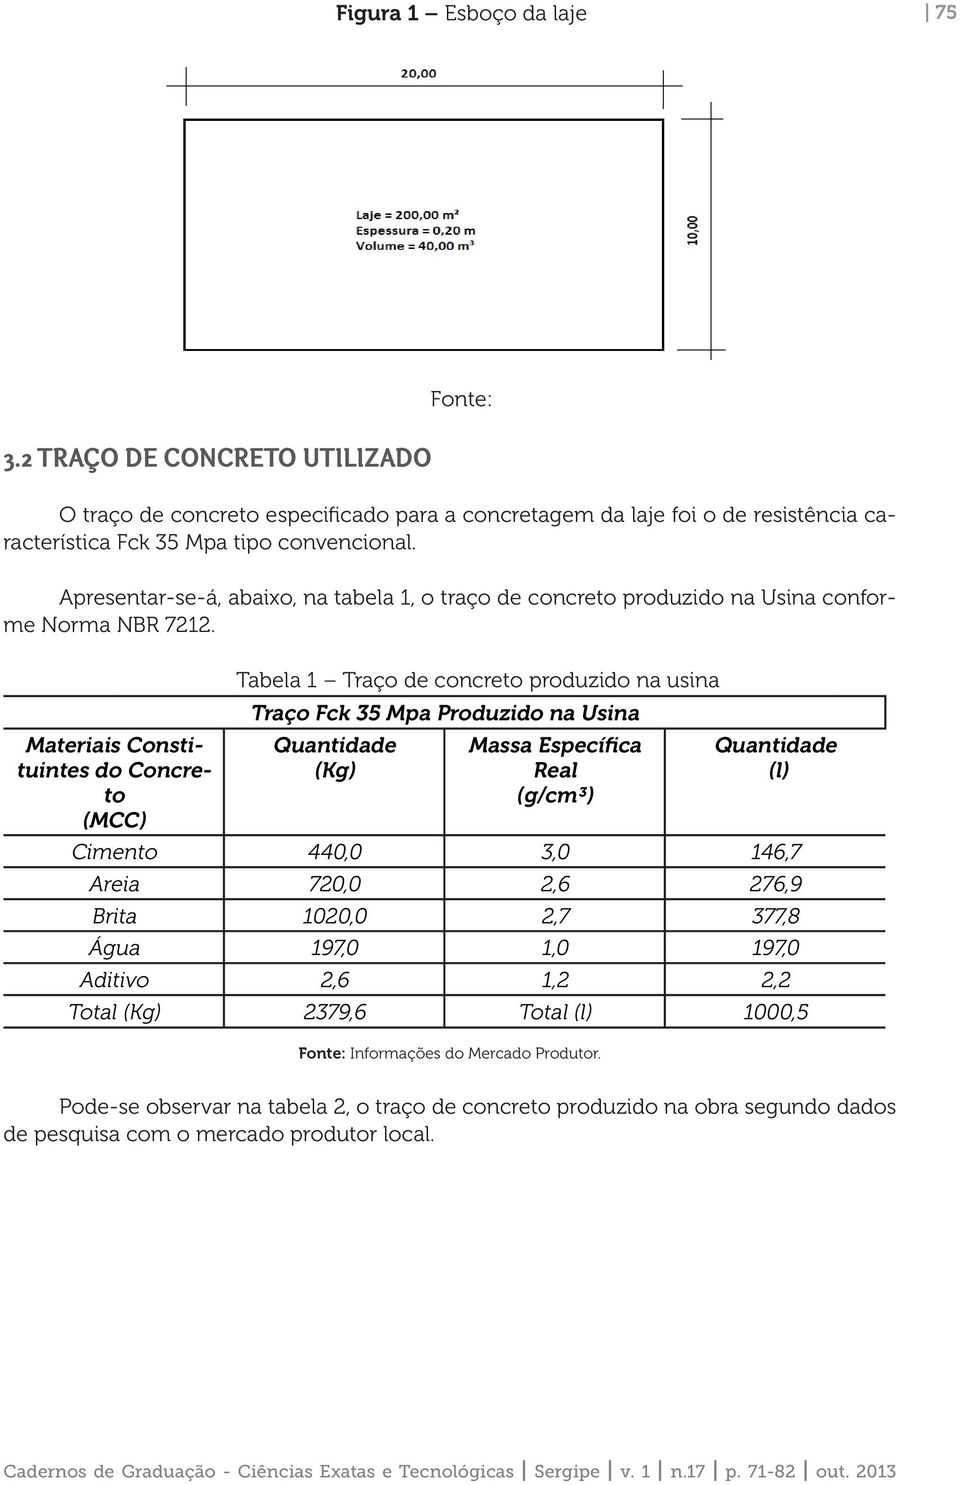 Materiais Constituintes do Concreto (MCC) Tabela 1 Traço de concreto produzido na usina Traço Fck 35 Mpa Produzido na Usina Quantidade (Kg) Massa Específica Real (g/cm³) Quantidade (l) Cimento